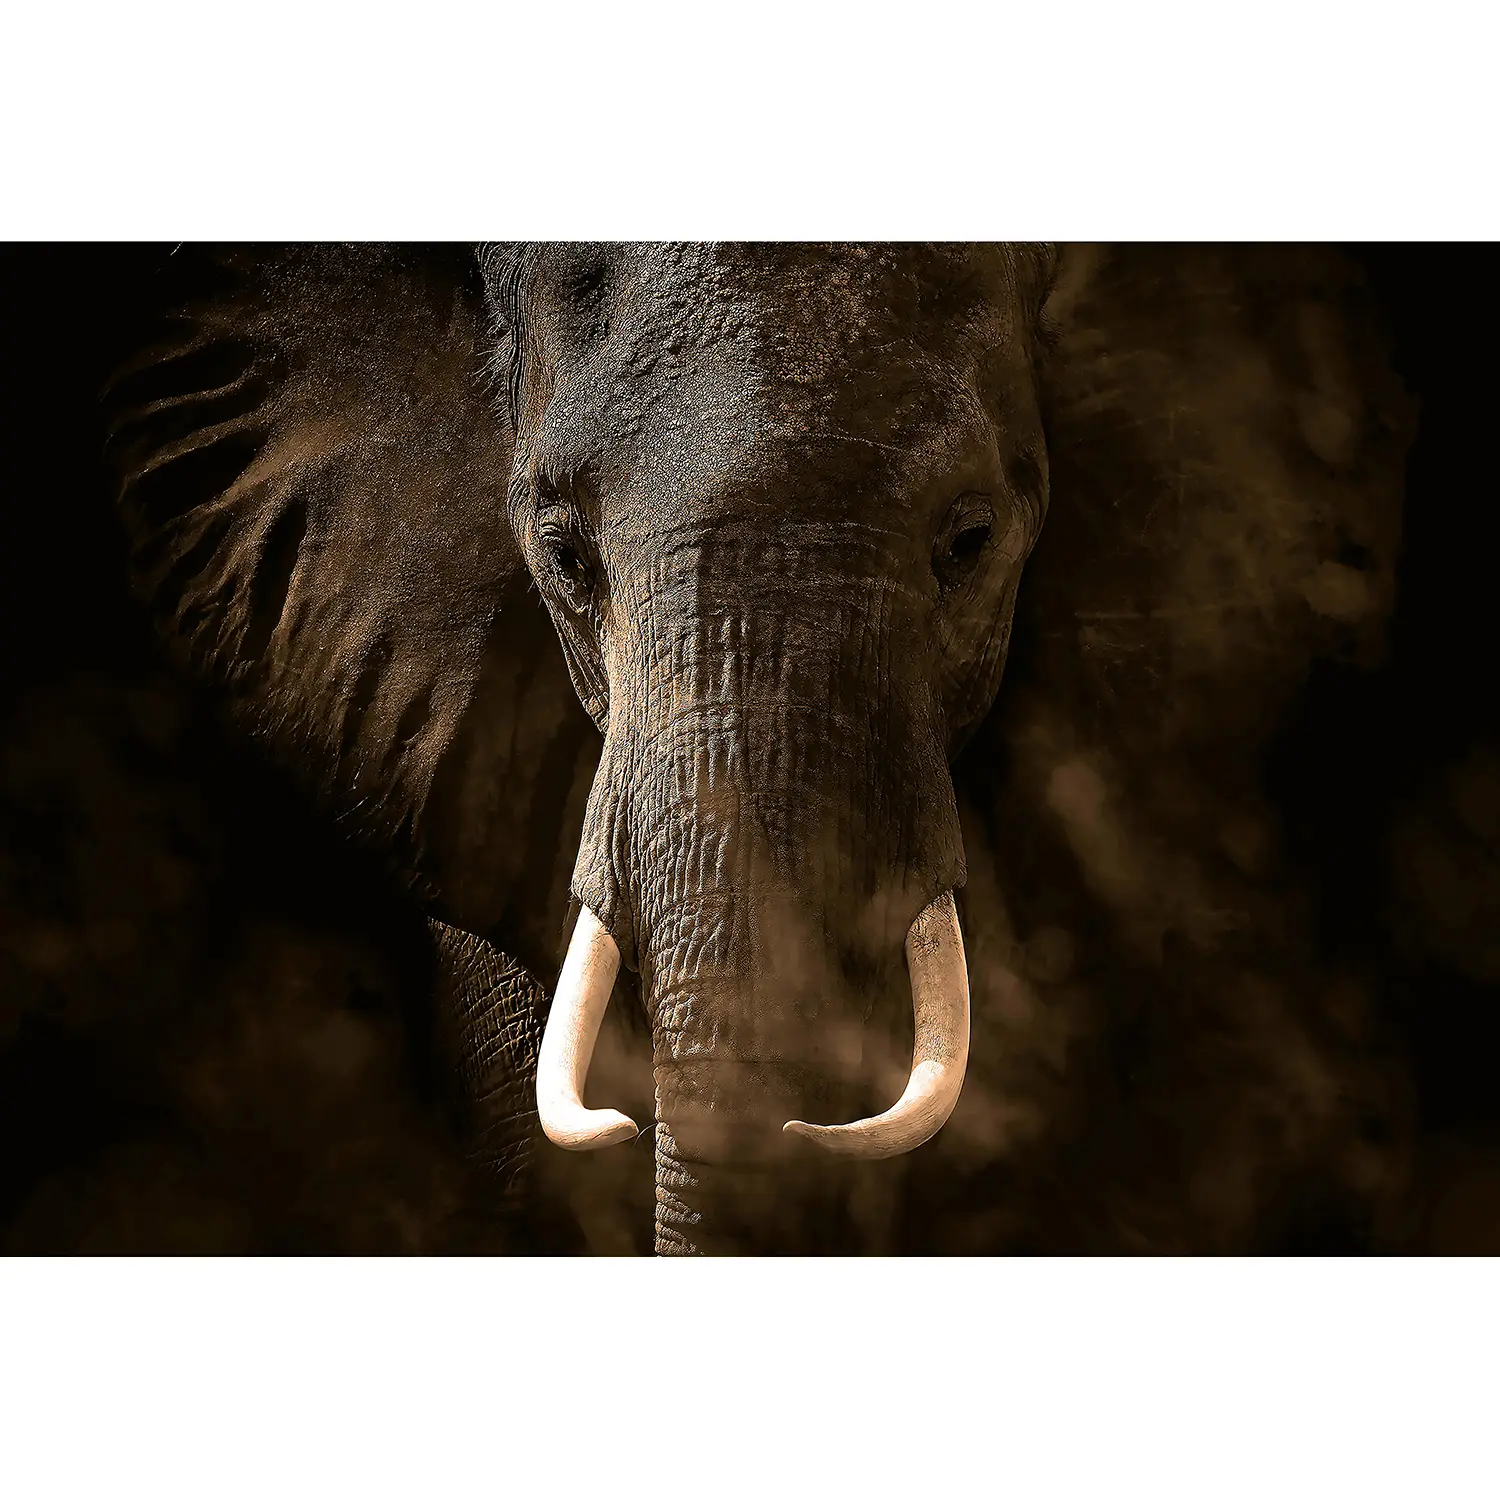 Fototapete Elefant II